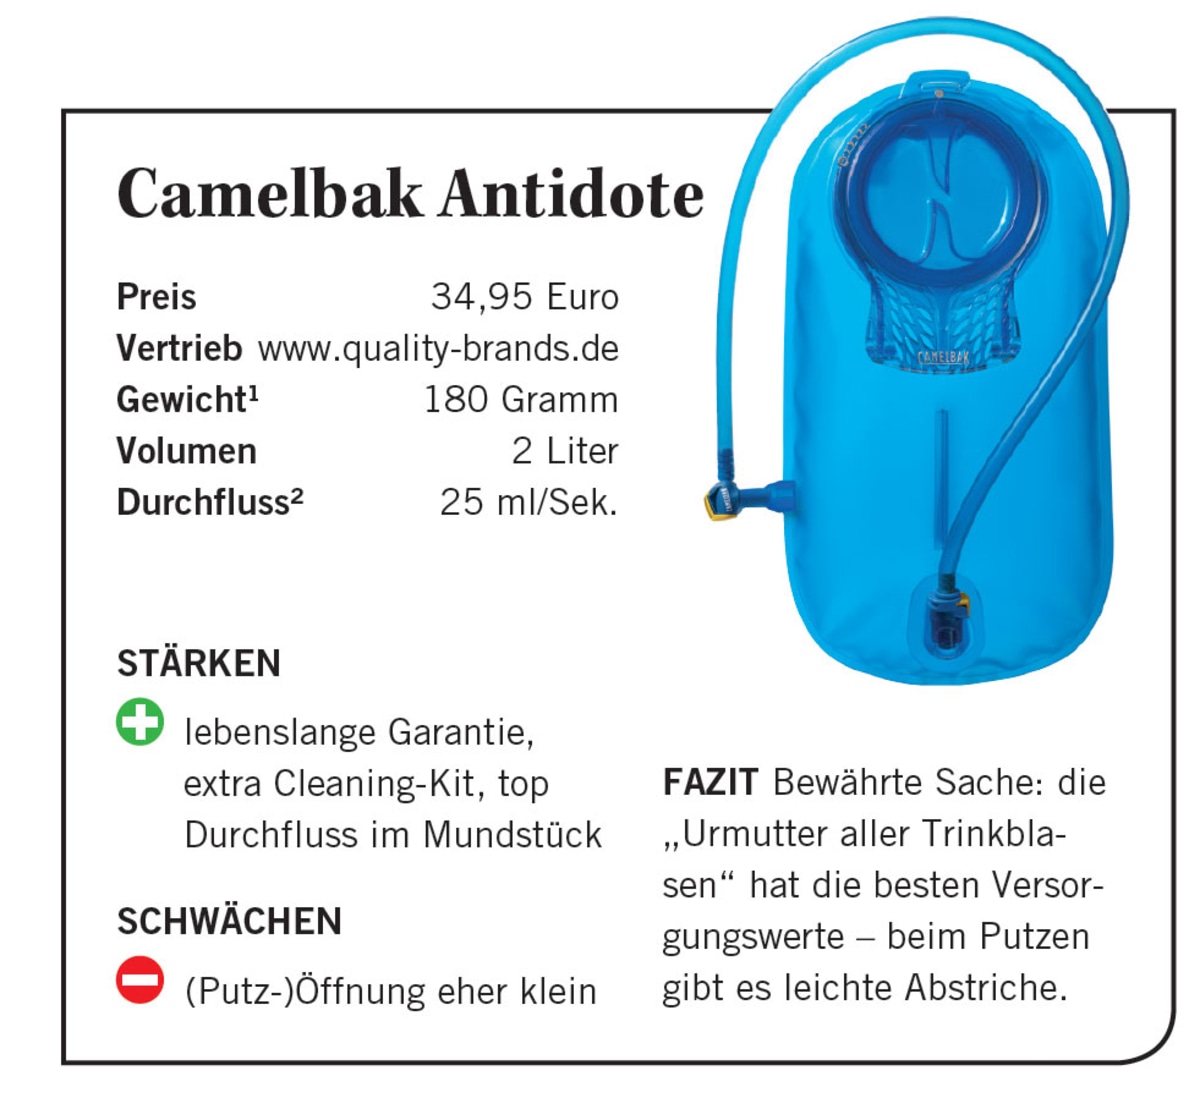 Camelbak Antidote